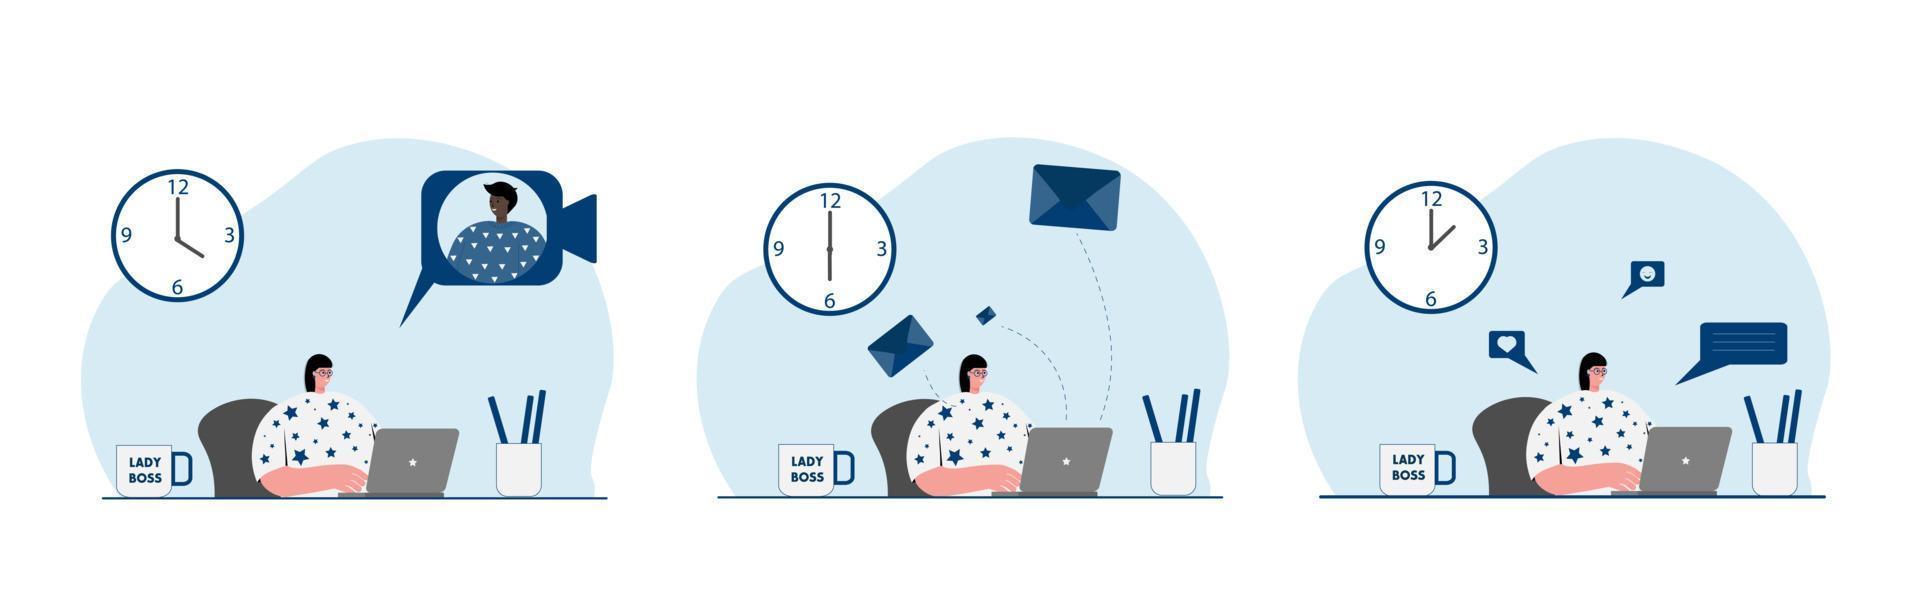 femme heureuse assise au bureau, travaillant, envoyant un message et parlant à d'autres personnes en ligne.set illustration vectorielle vecteur